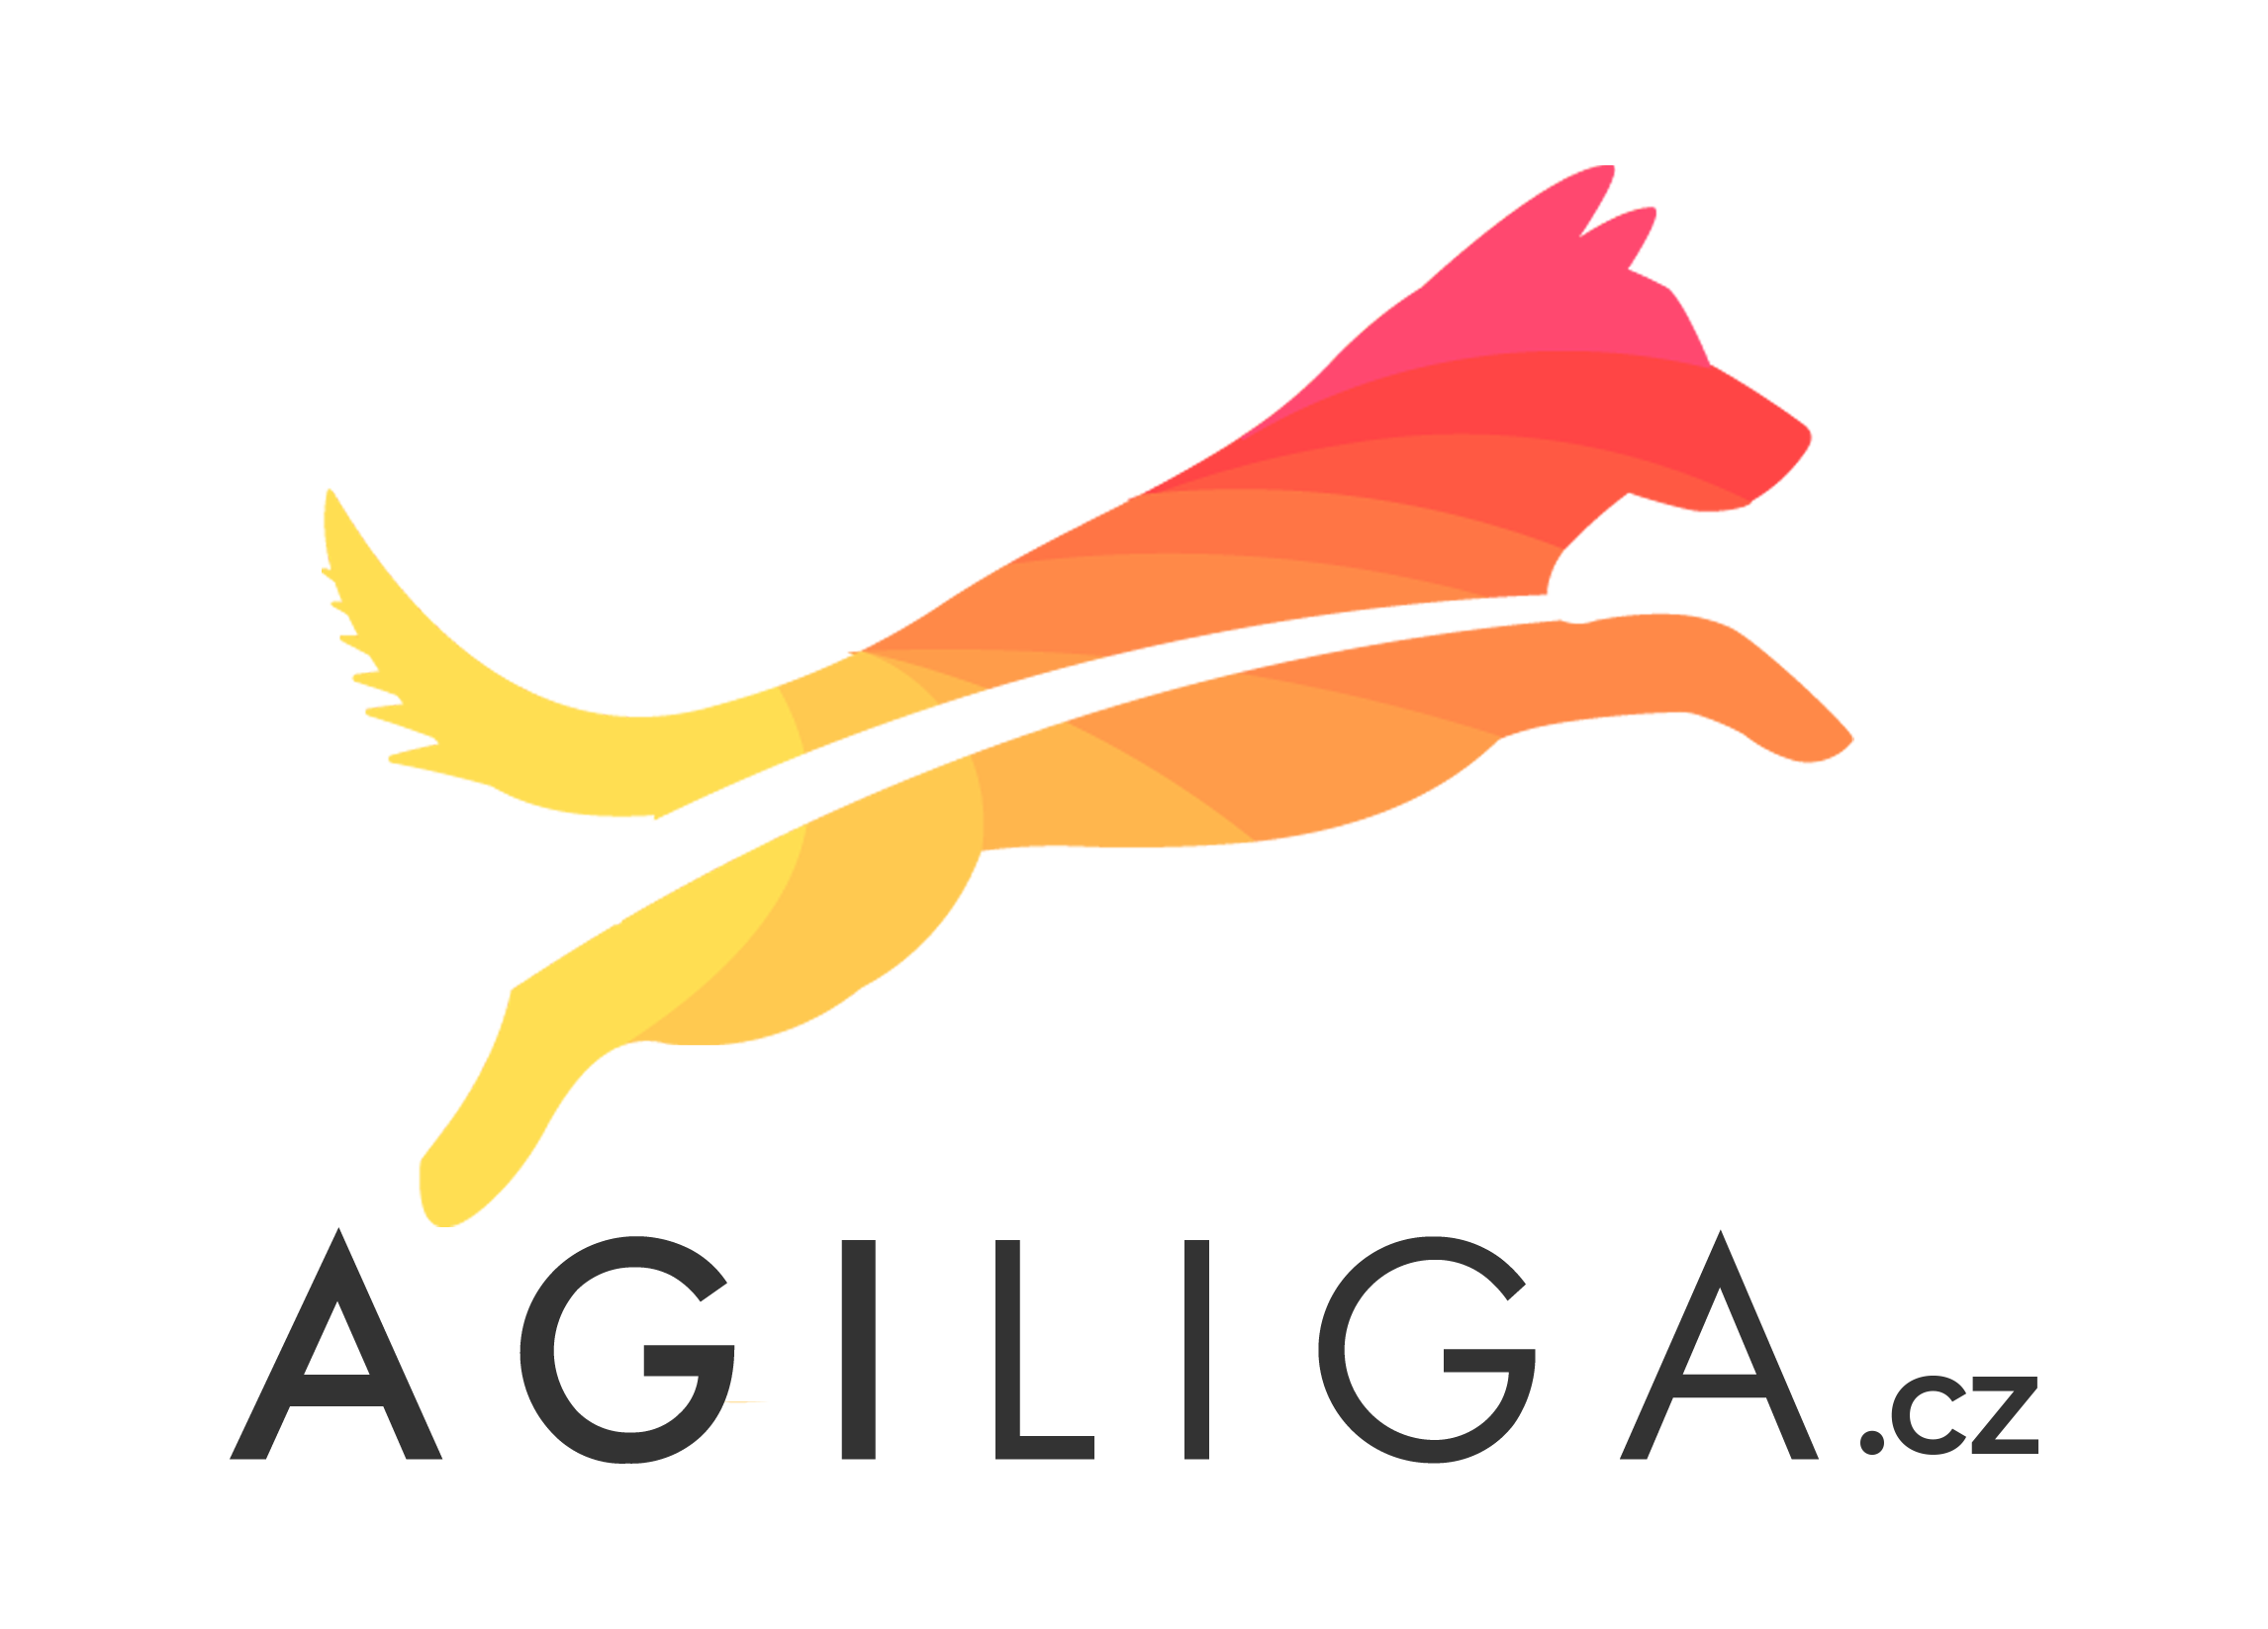 AGILIGA.cz